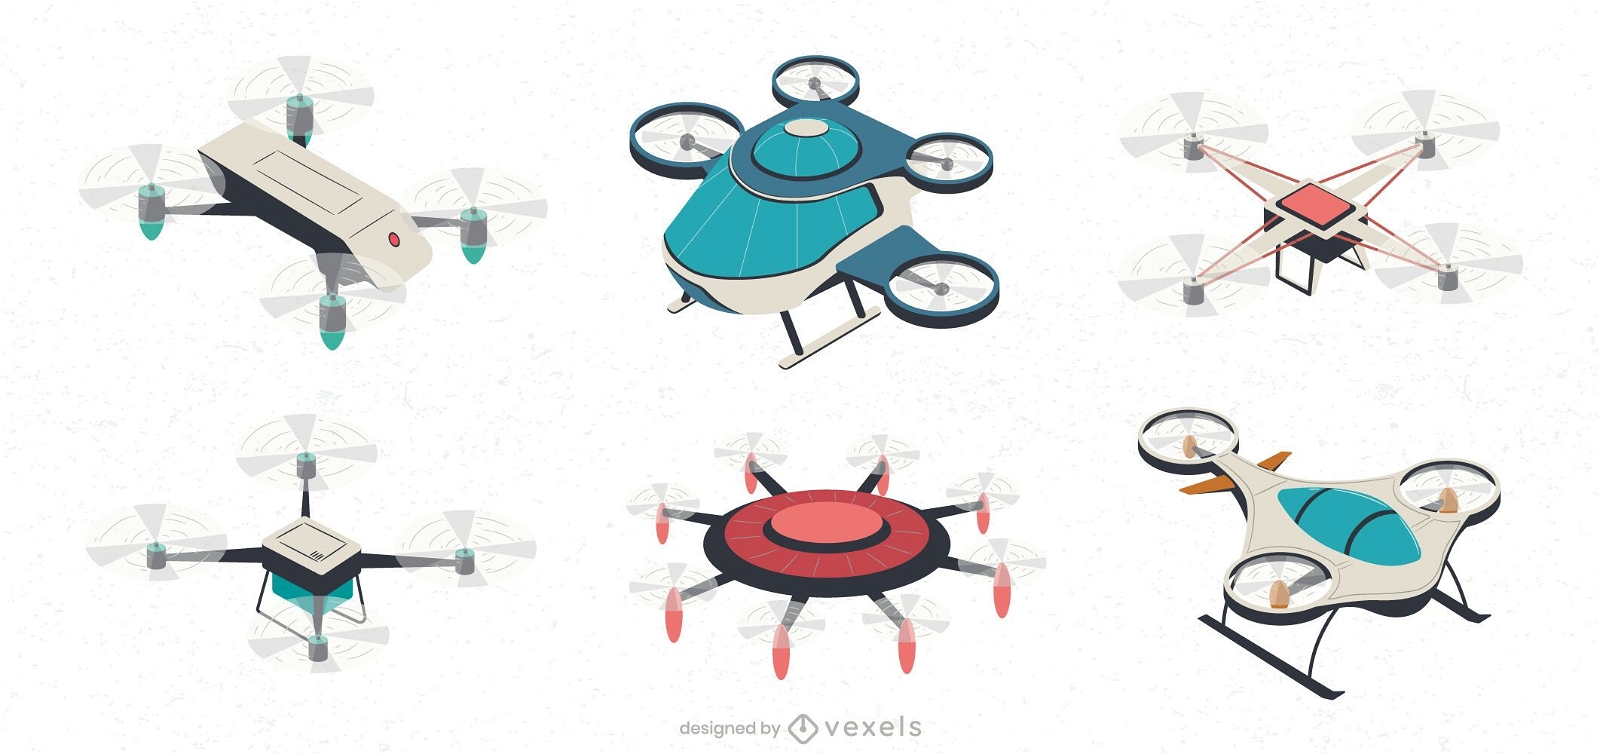 Illustrationsset für Drohnenflugzeuge